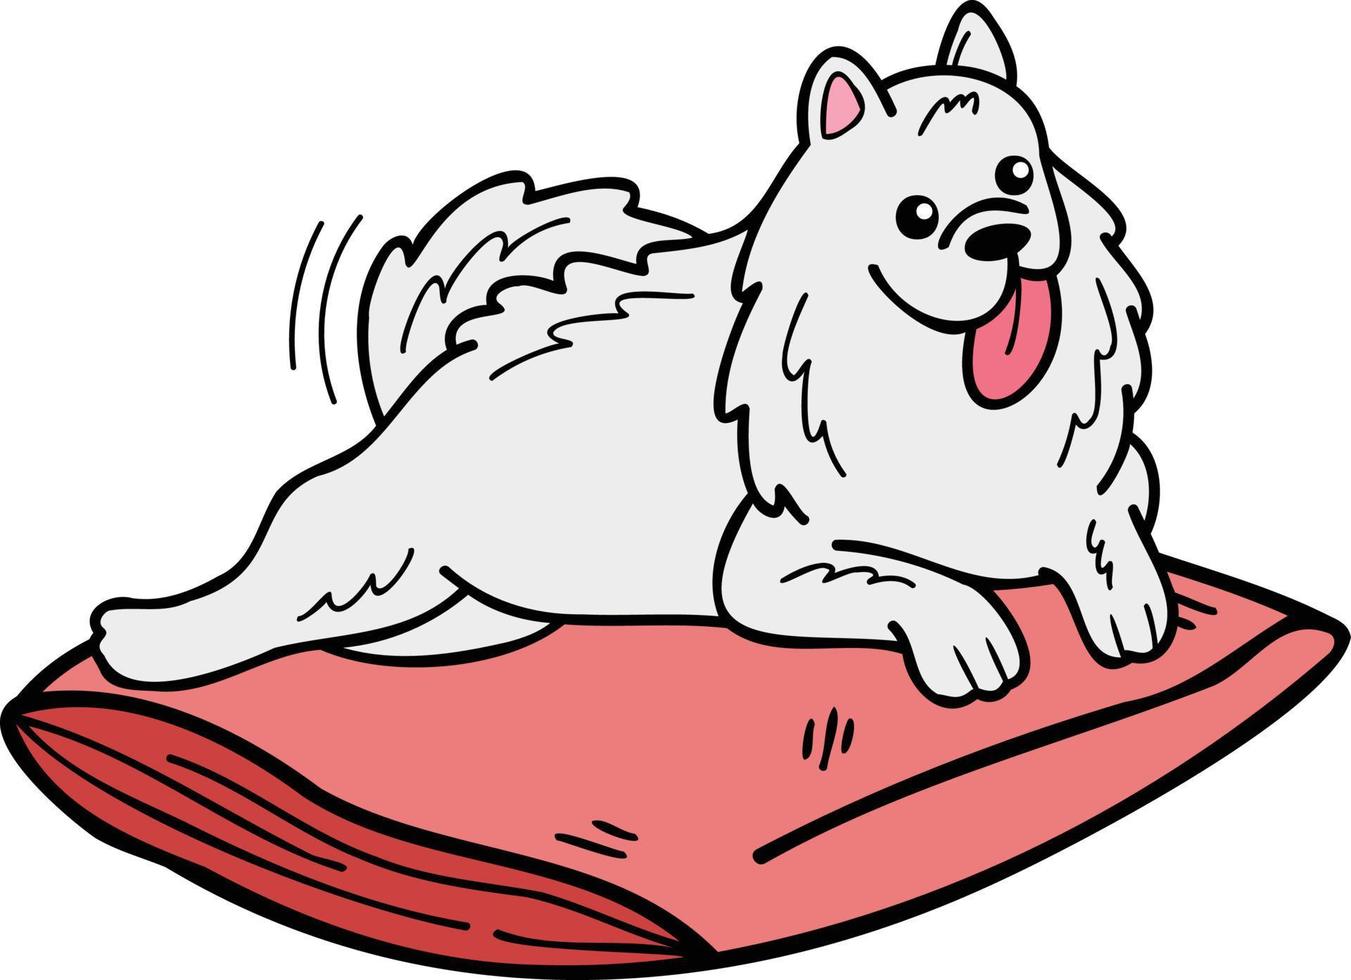 illustration de chien samoyède endormi dessiné à la main dans un style doodle vecteur